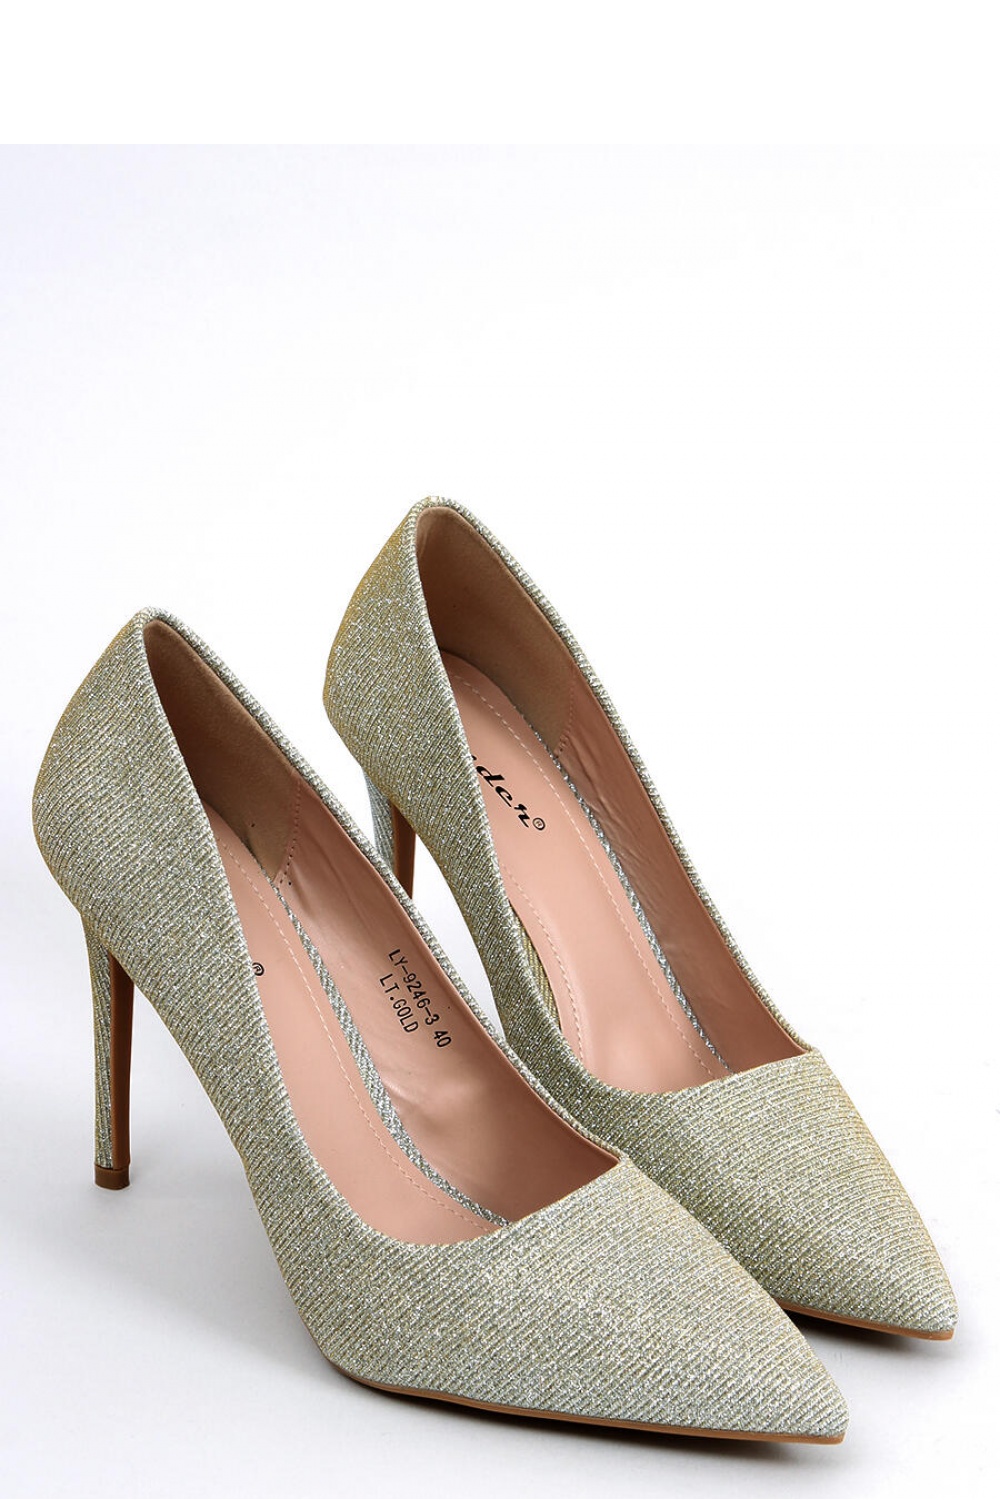 High heels model 174112 Inello